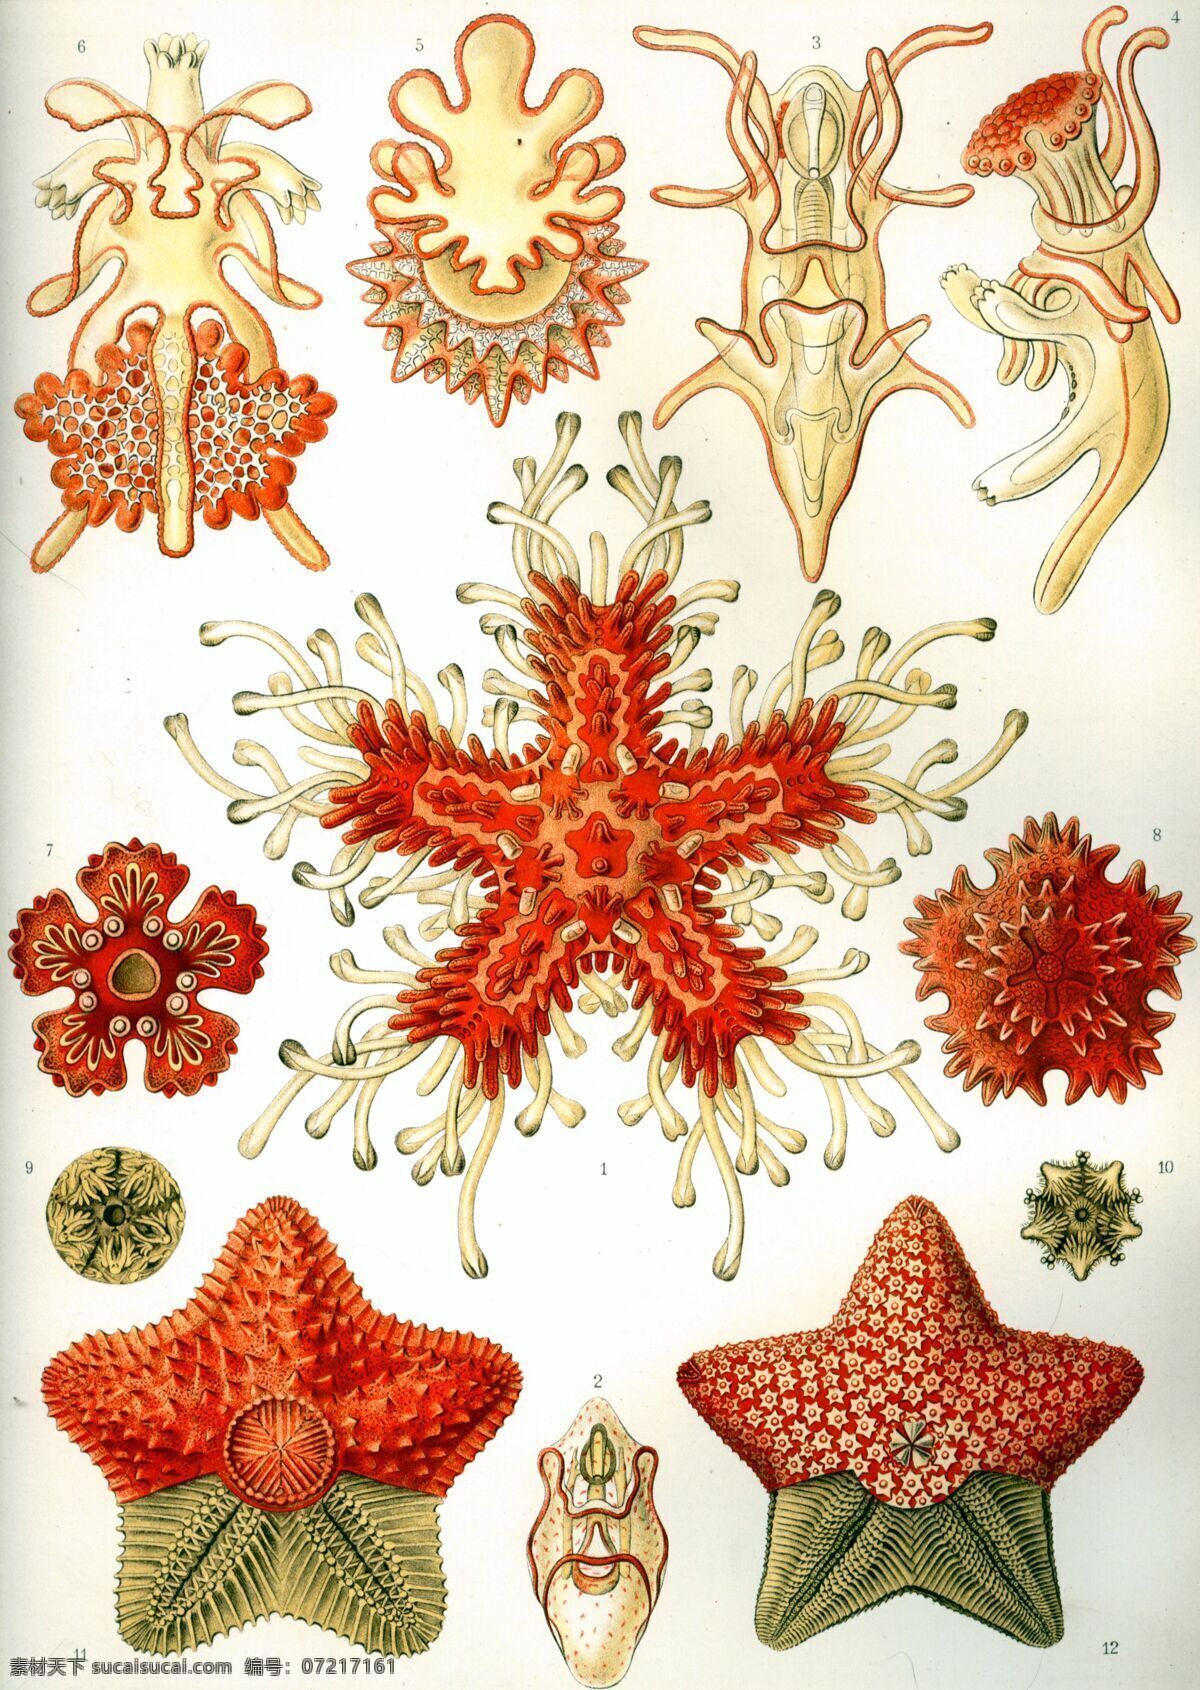 古生物 生物草图 海洋生物 平版印刷 恩斯特海克尔 生物 素描 绘画书法 文化艺术